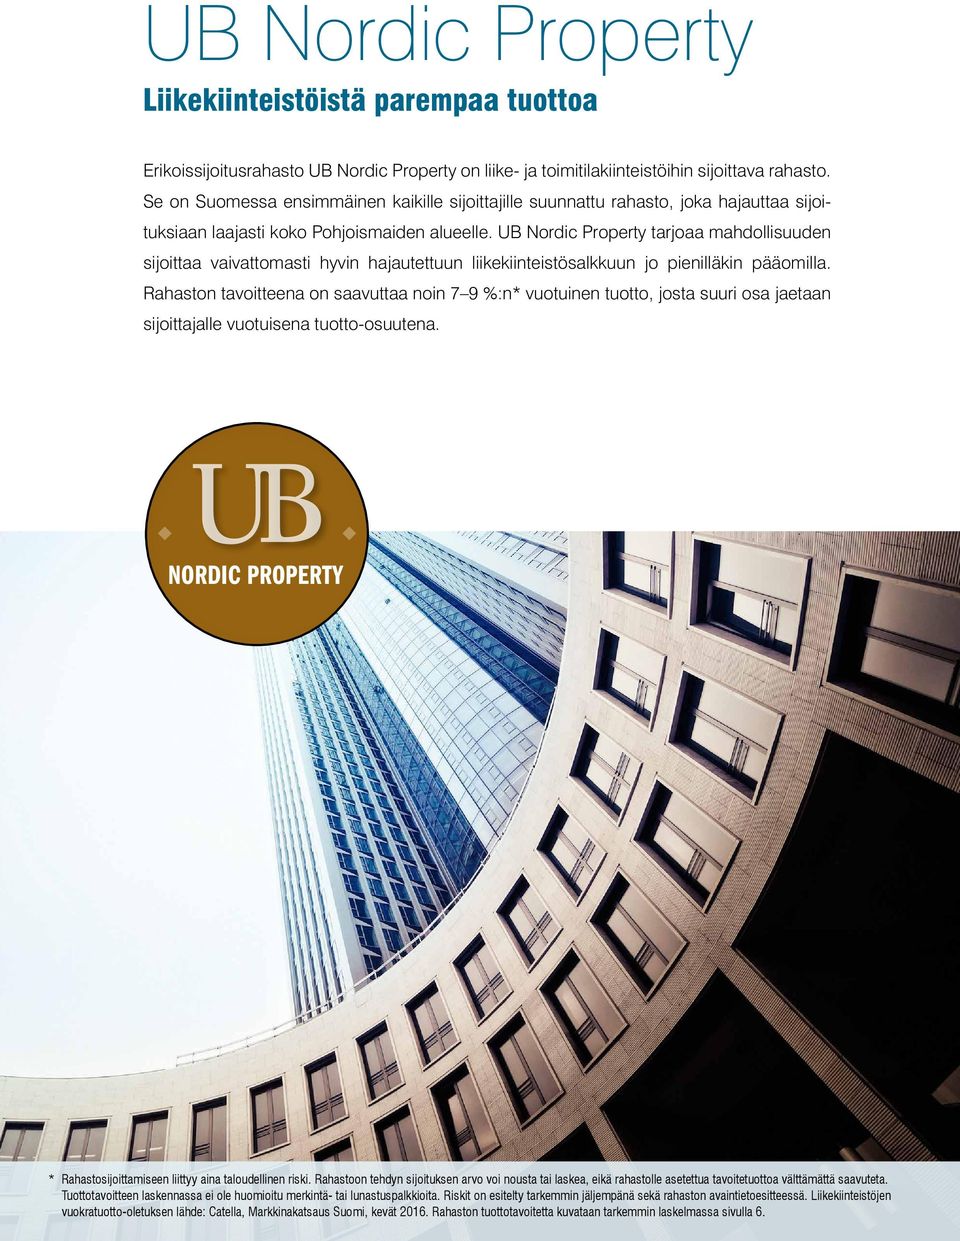 UB Nordic Property tarjoaa mahdollisuuden sijoittaa vaivattomasti hyvin hajautettuun liikekiinteistösalkkuun jo pienilläkin pääomilla.